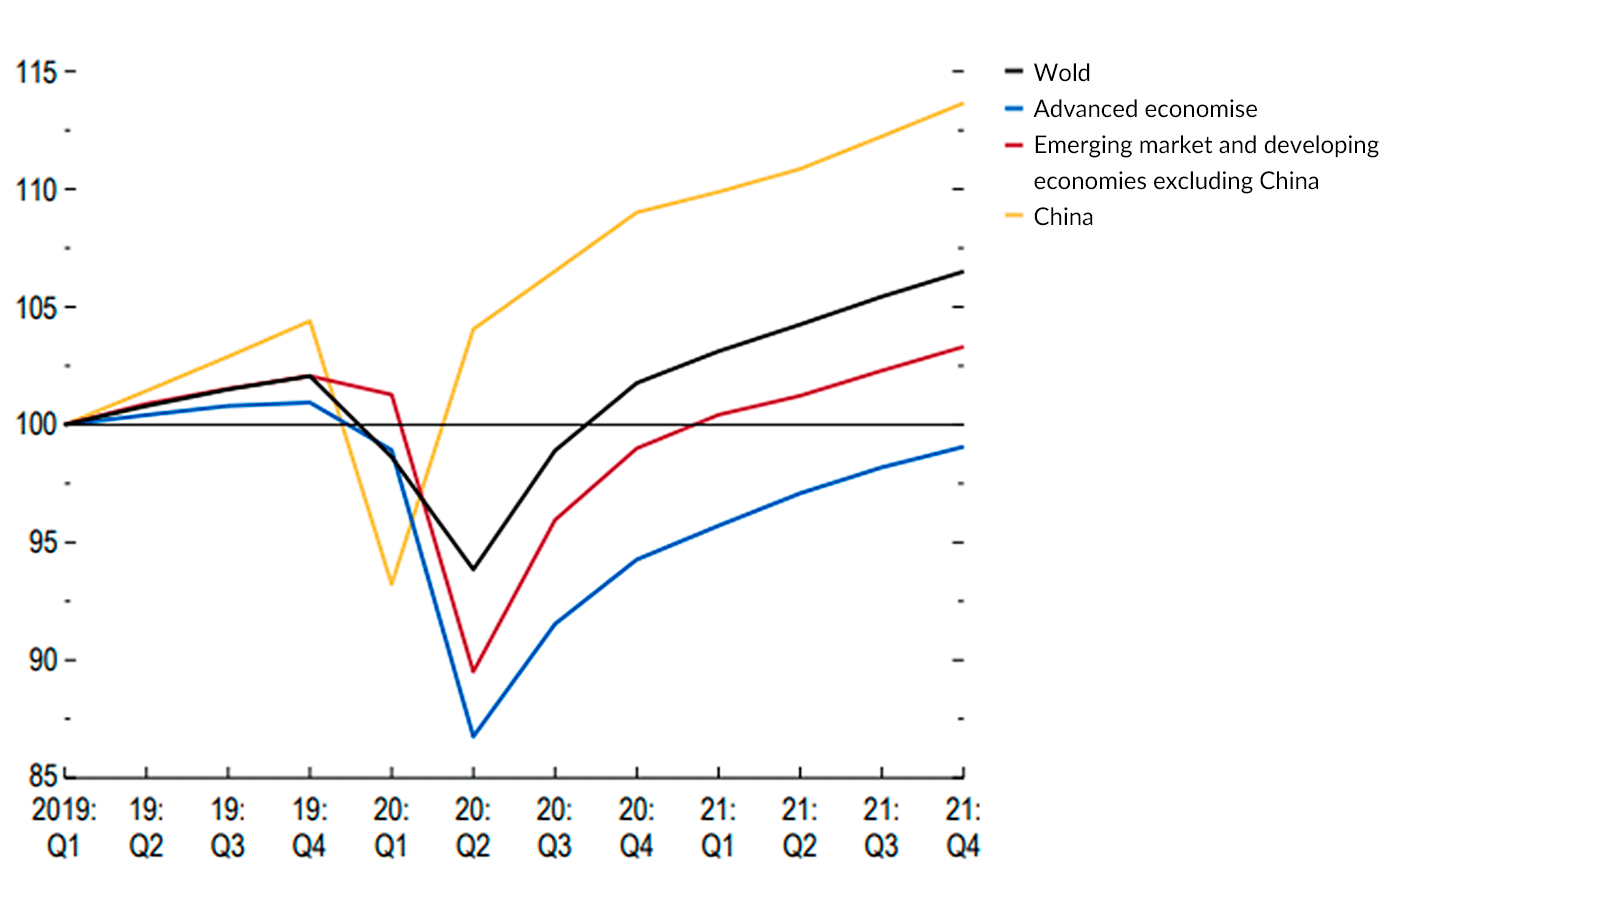 Væksten i Verdensøkonomien ifølge IMF